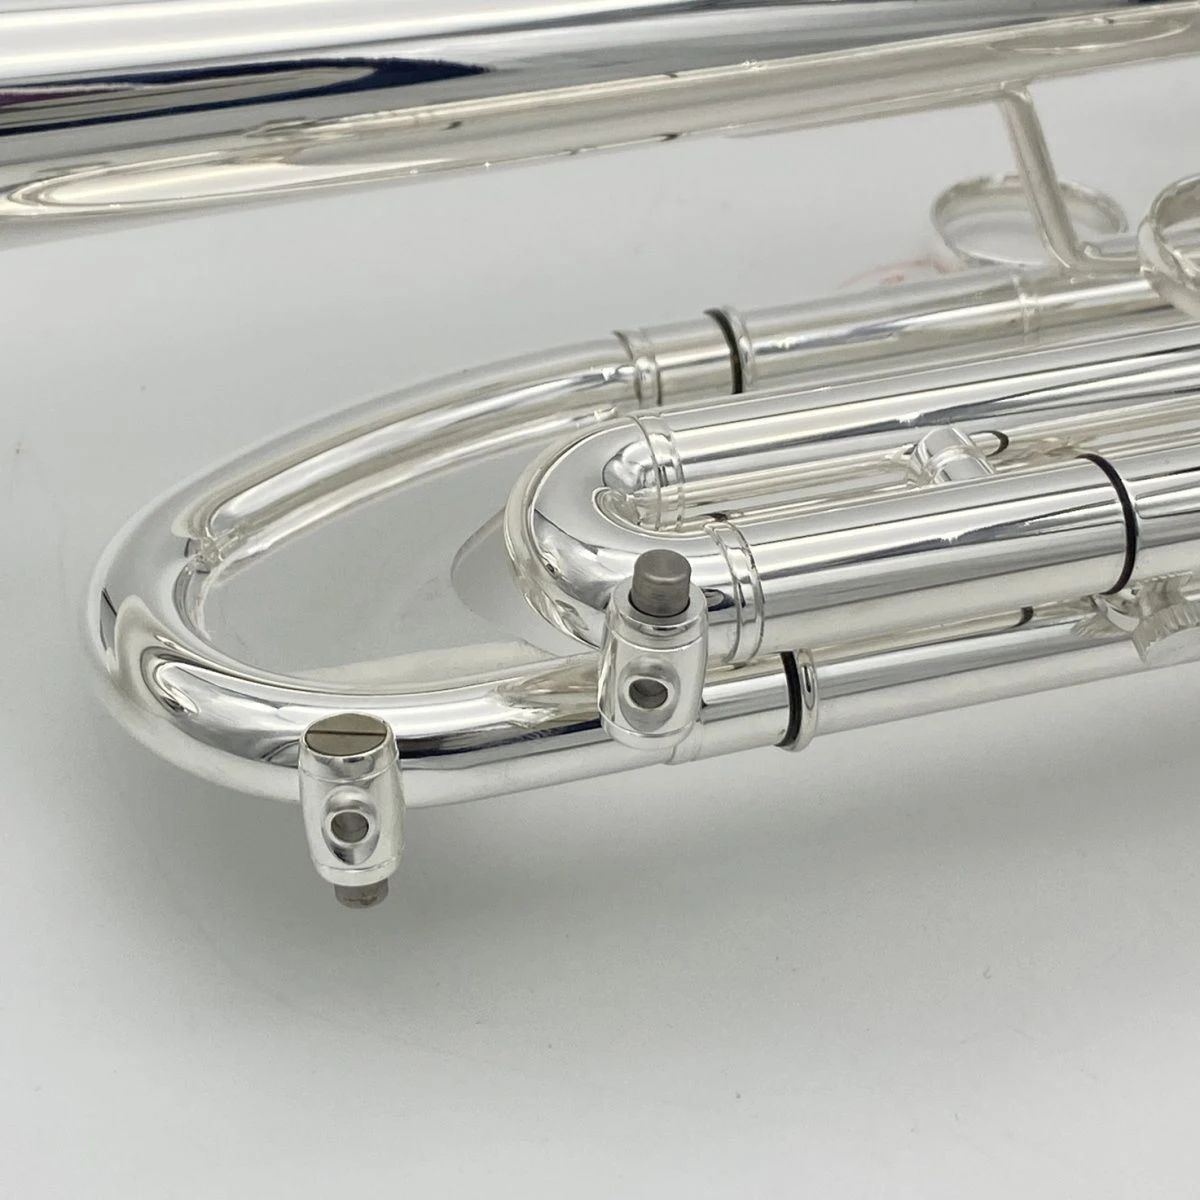 Nowy europejski srebrna tablica B, pogorszyły instrument trąbki, aby grać w mosiężną trąbkę na poziomie egzaminacyjnym